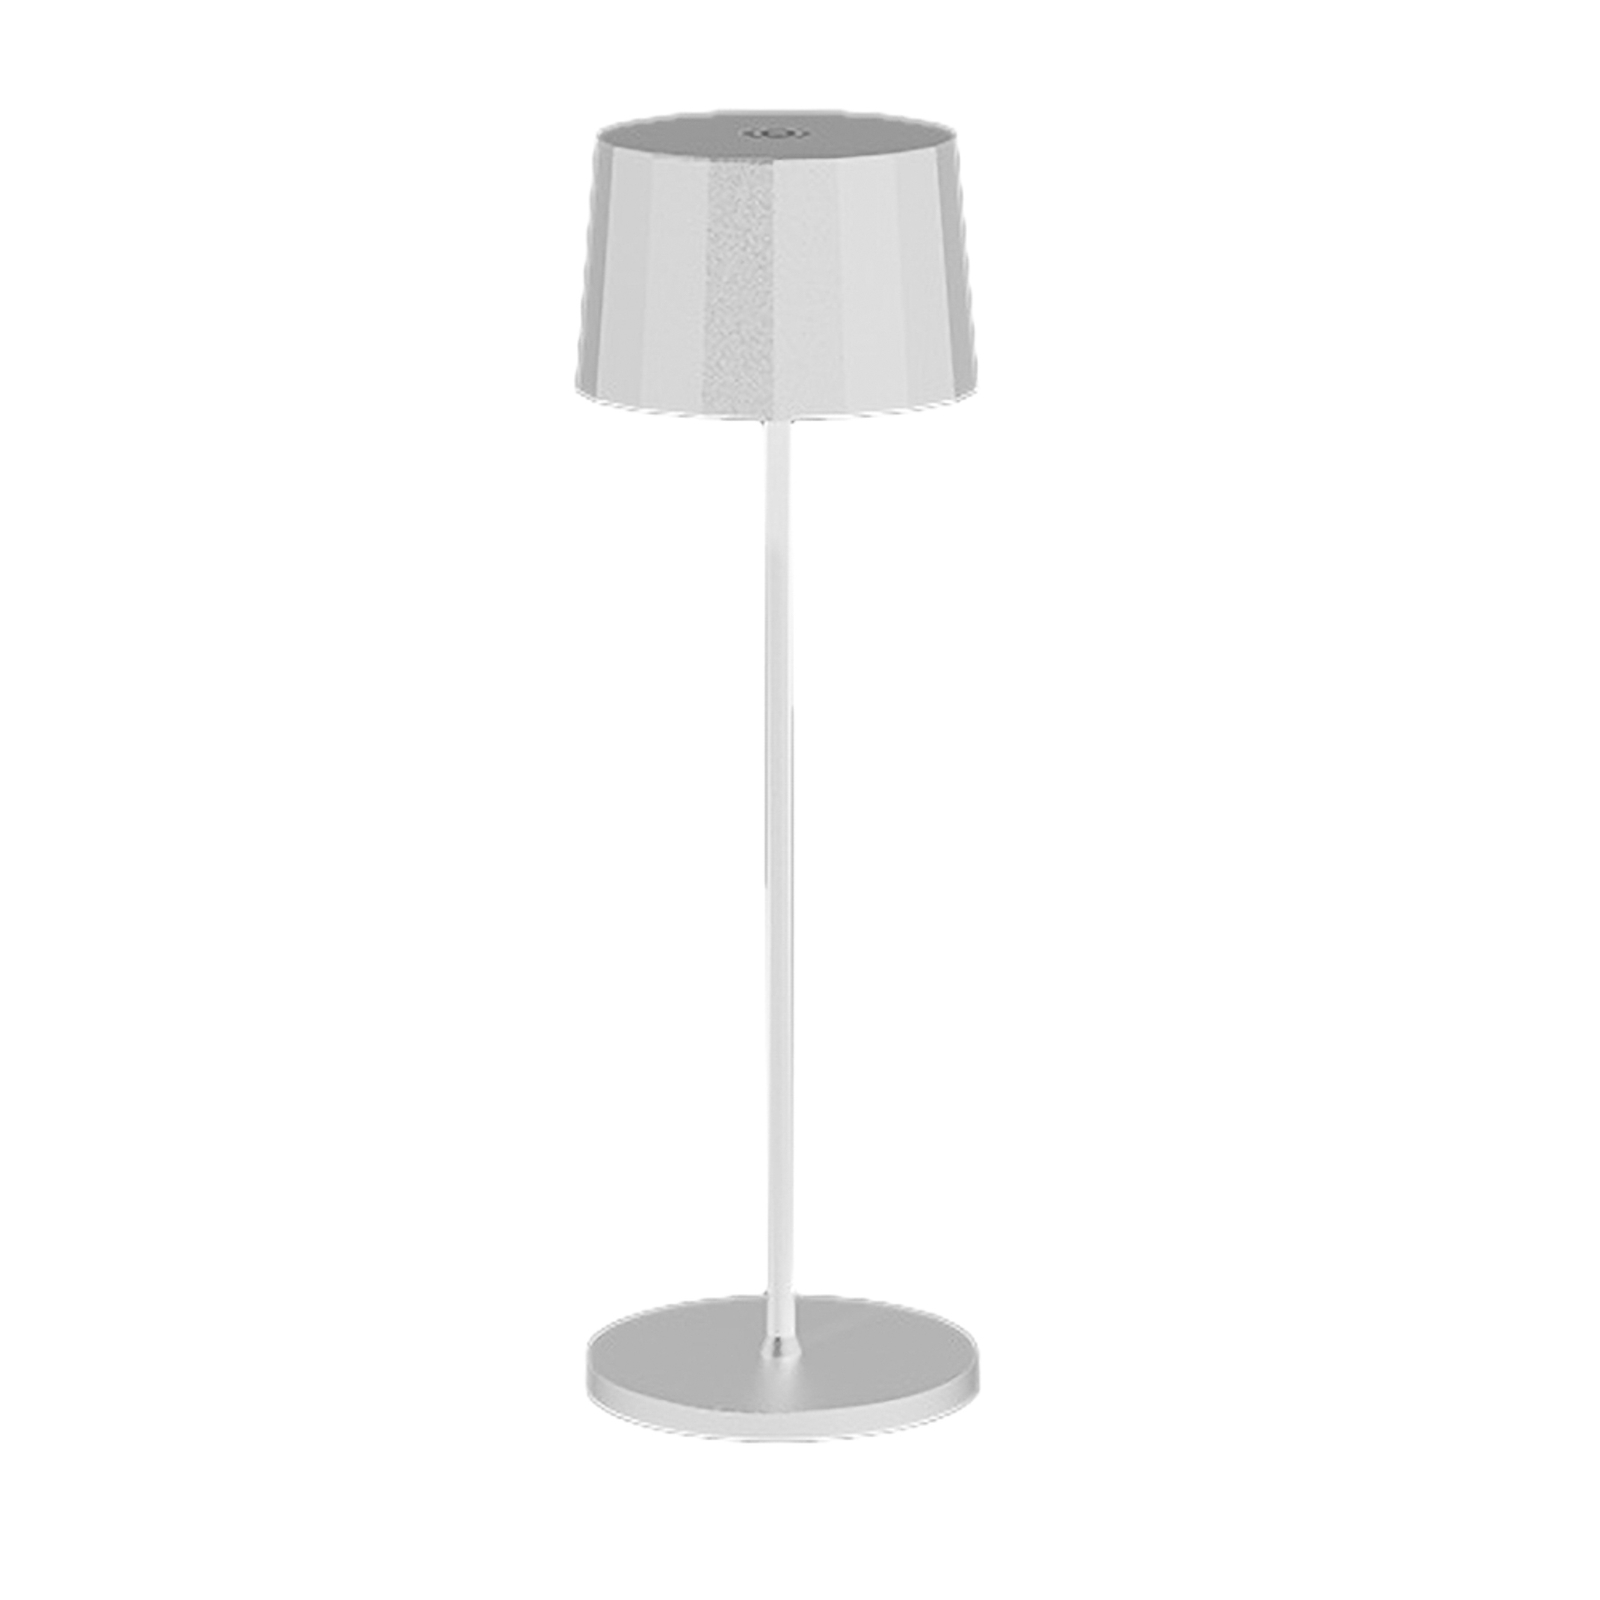 Egger Tosca lampada LED da tavolo, bianco